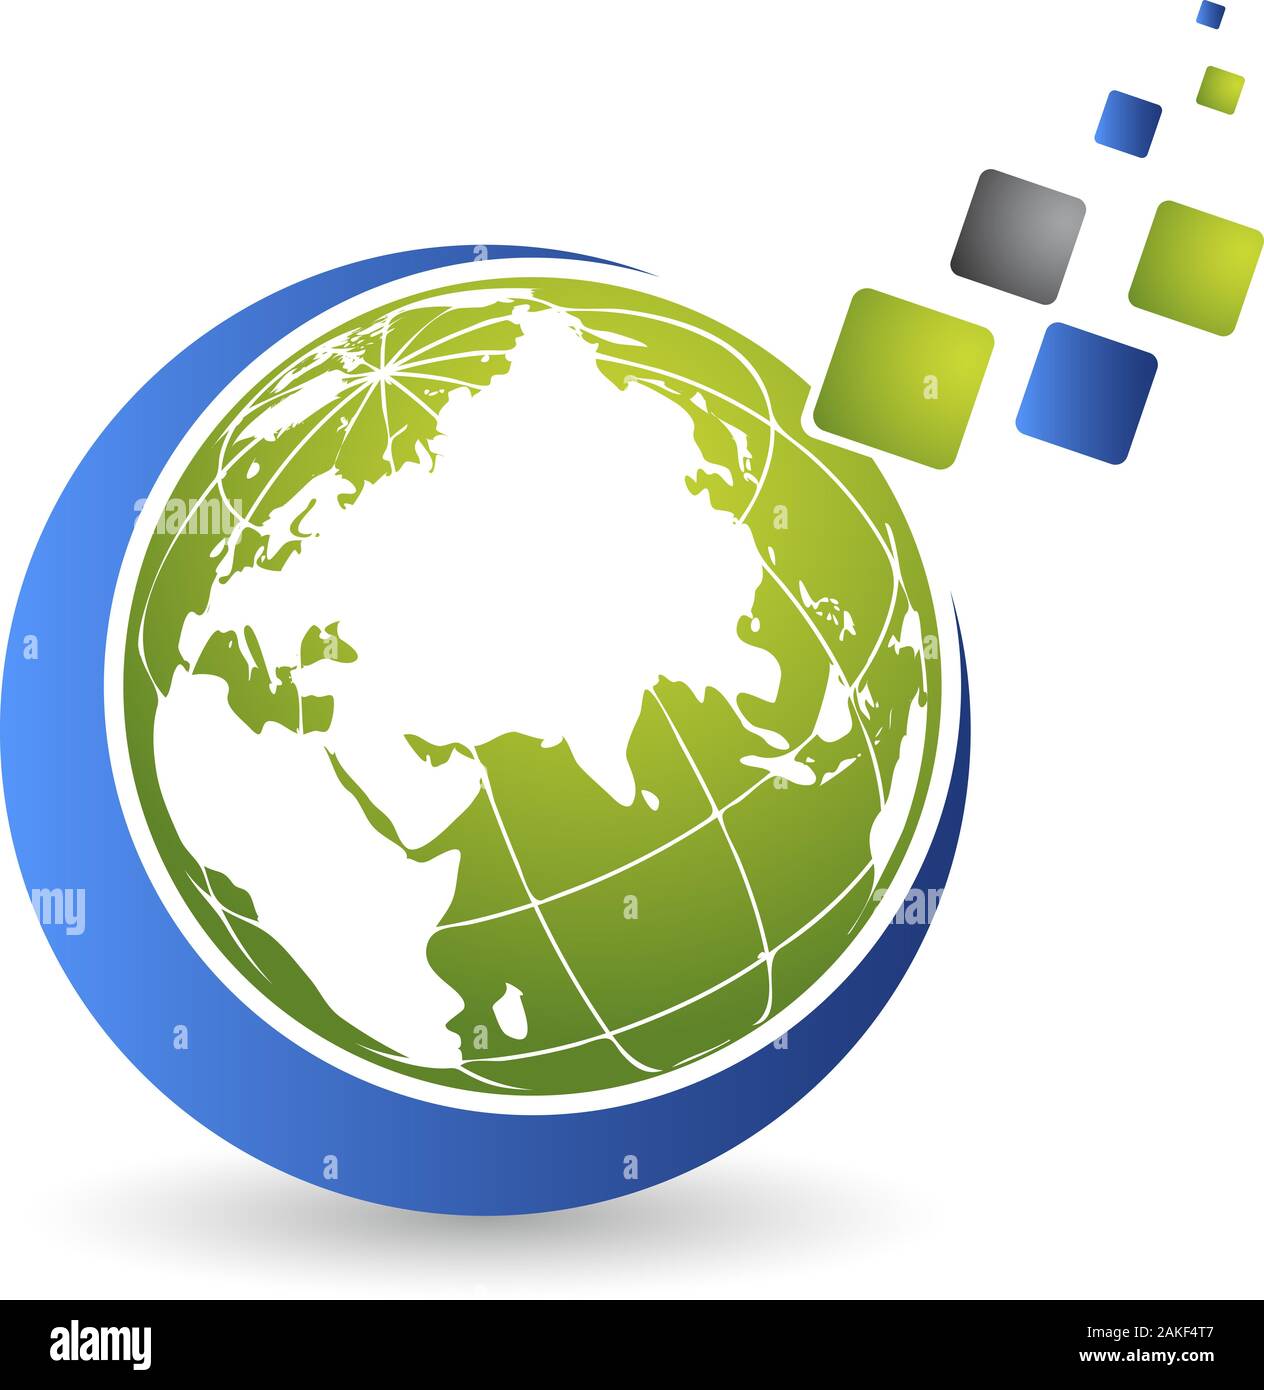 globe puzzle logo Stock Photo - Alamy